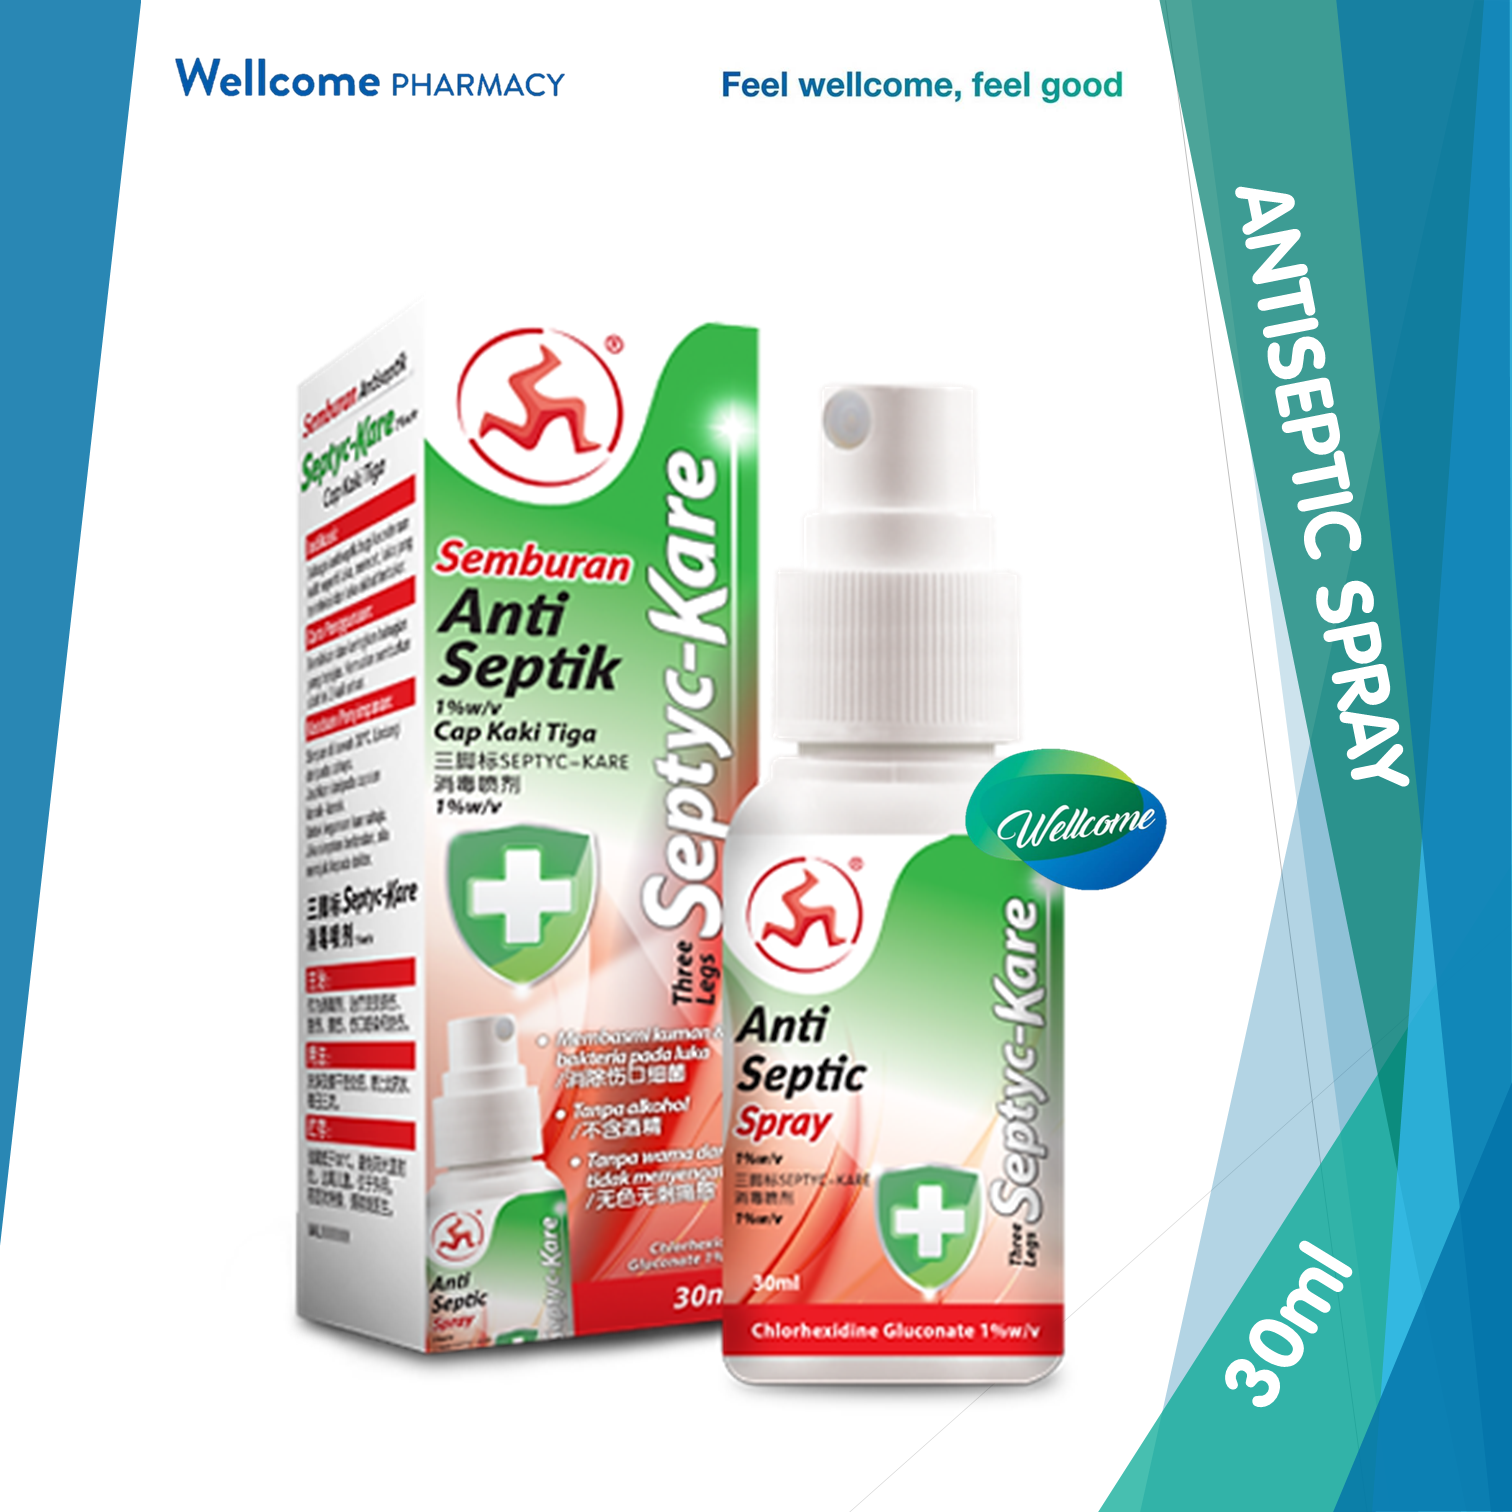 Wen Ken Septyc-Kare Antiseptic Spray - 30ml.png